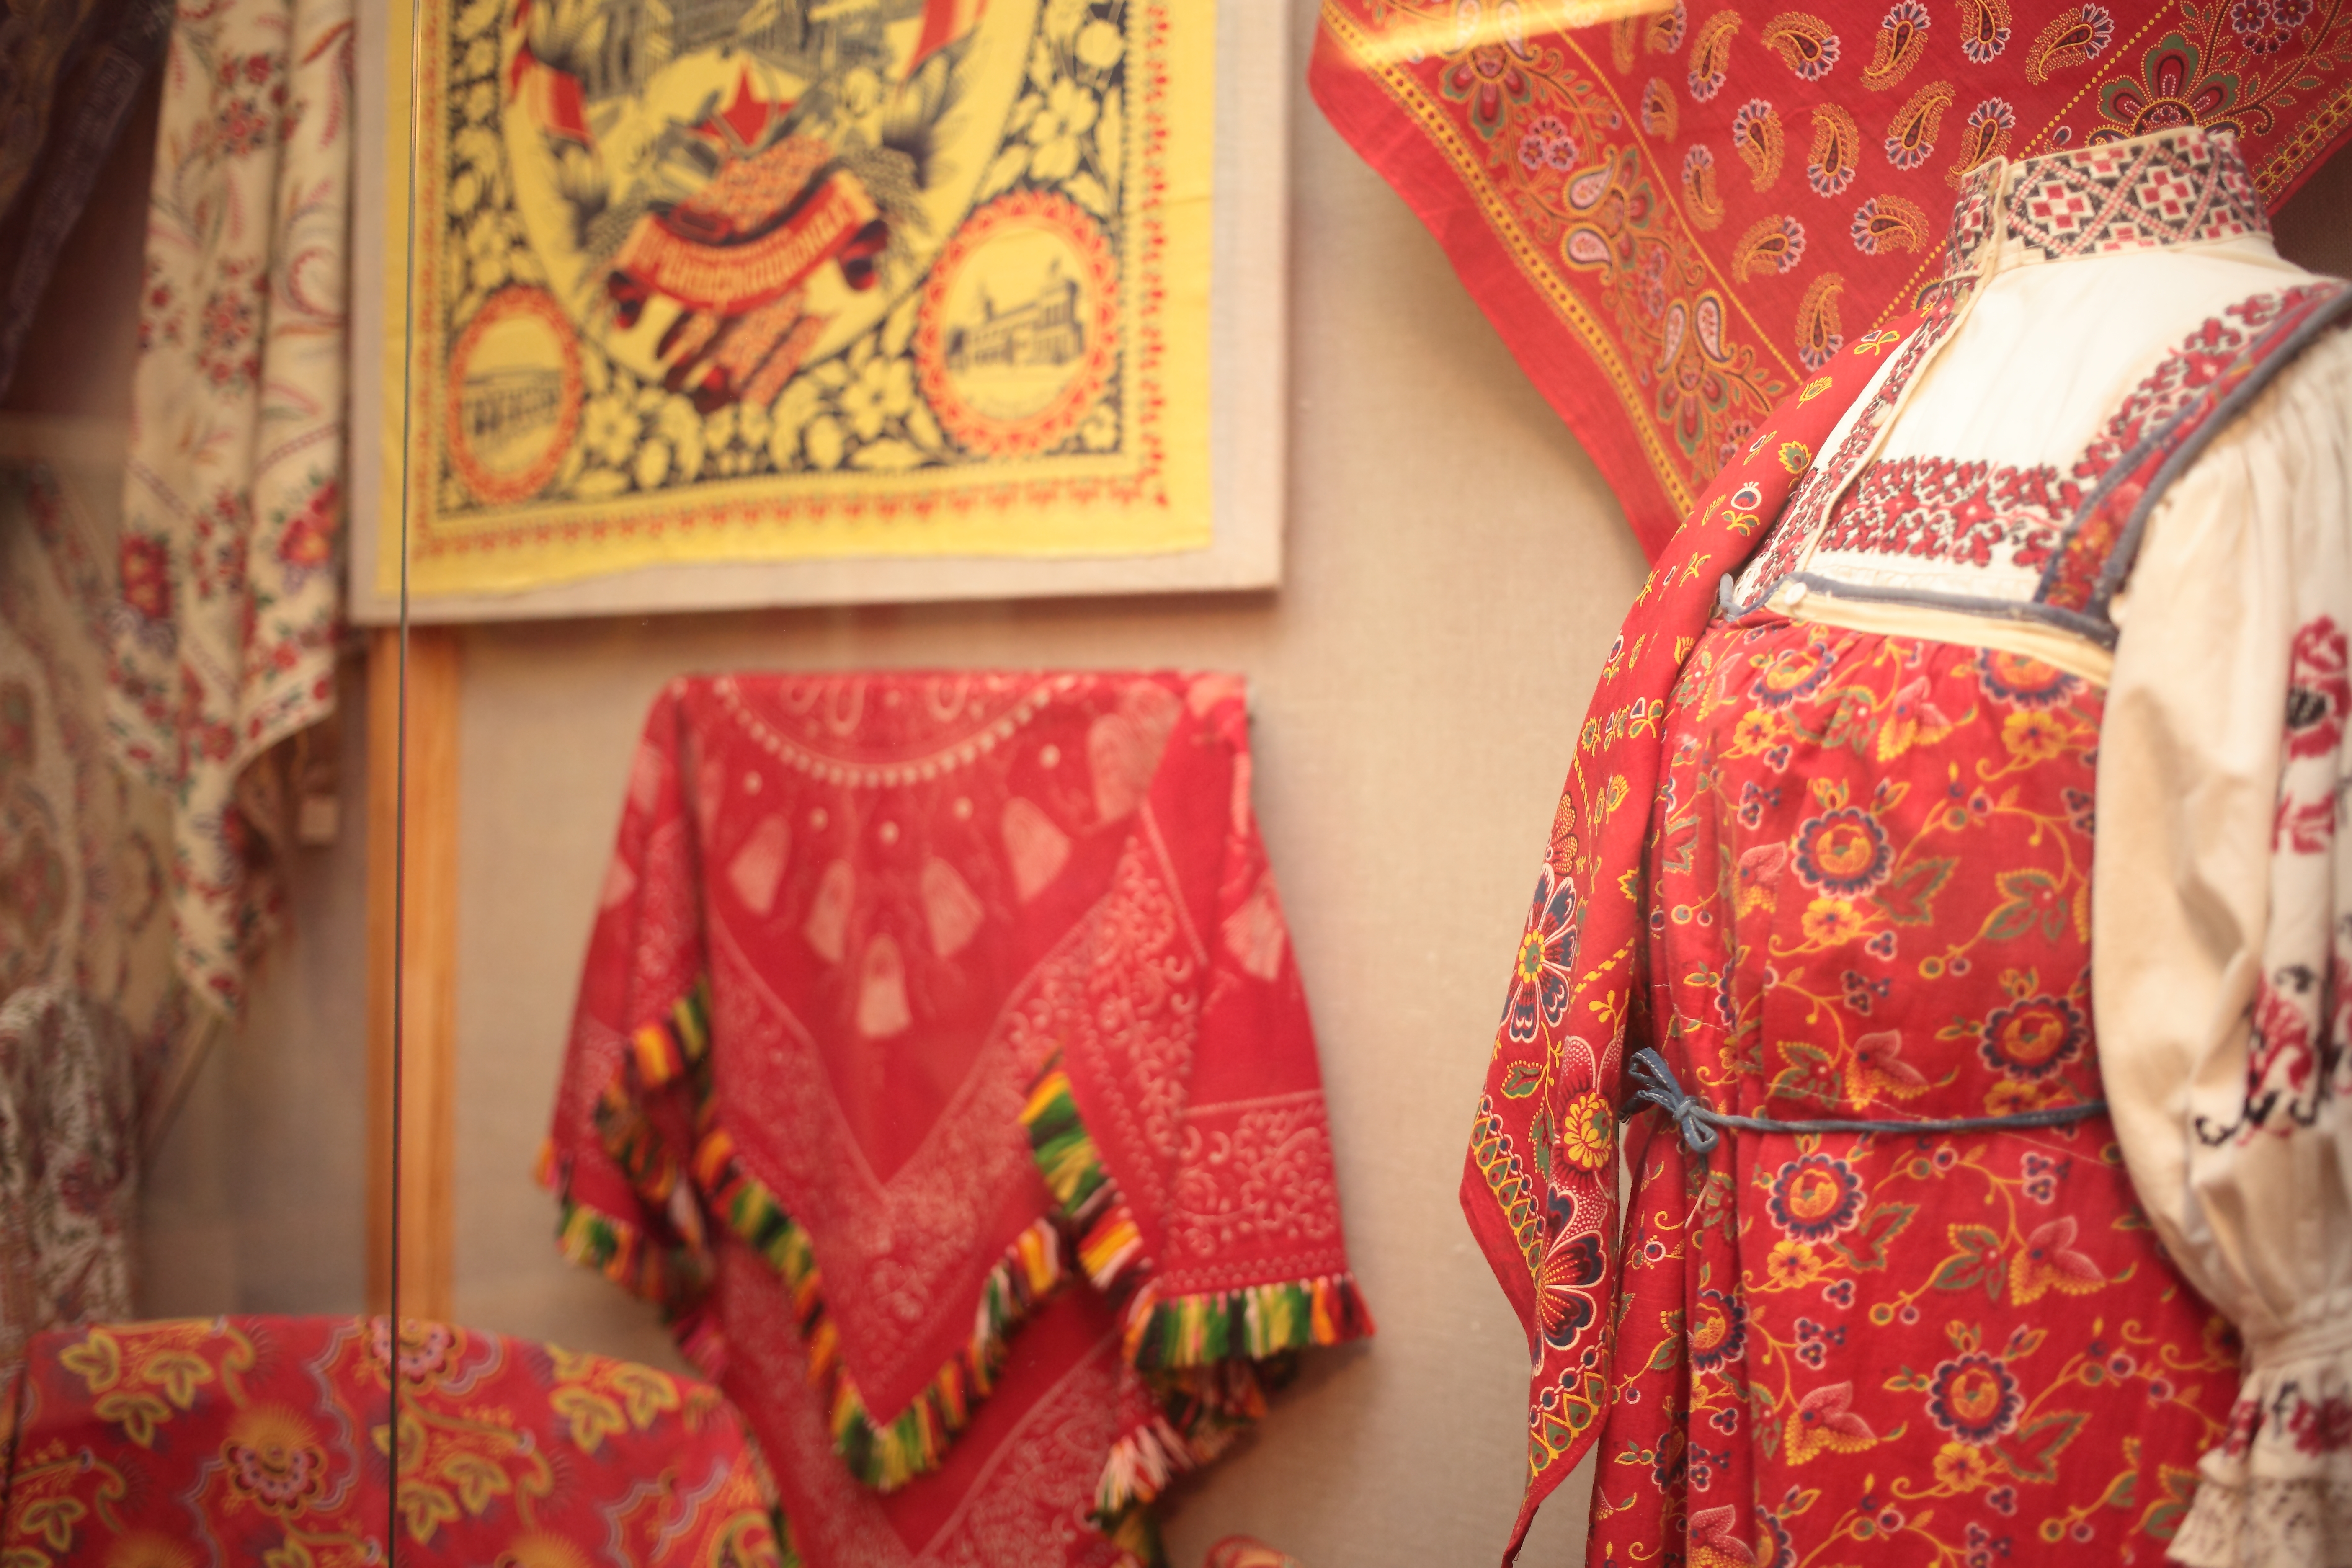 Сегодня Павловопосадская платочная мануфактура выпускает около 800 видов шалей, платков, шарфов, кашне, палантинов и скатертей из натуральных волокон